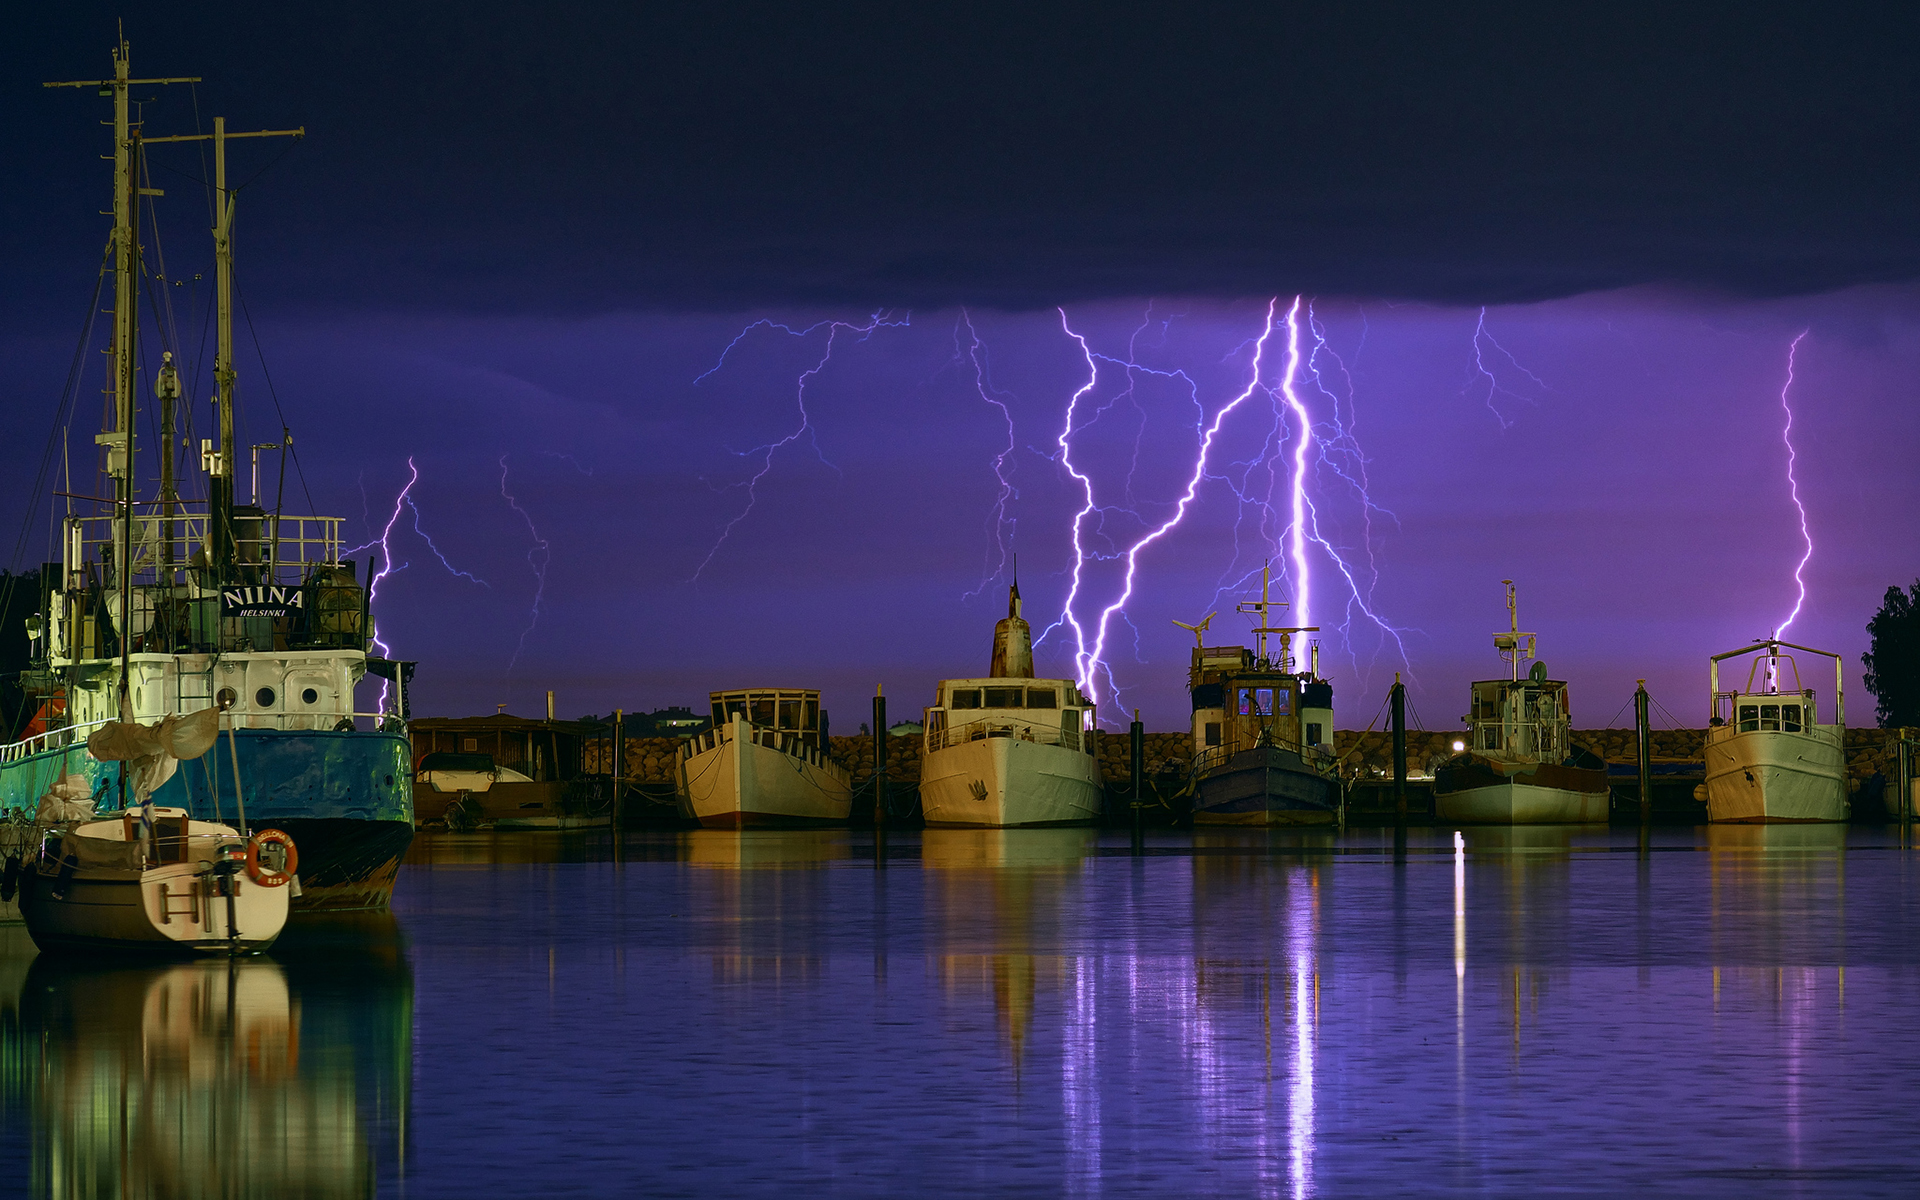 lightning, Purple, Boats, Harbor, Storm, Night Wallpaper